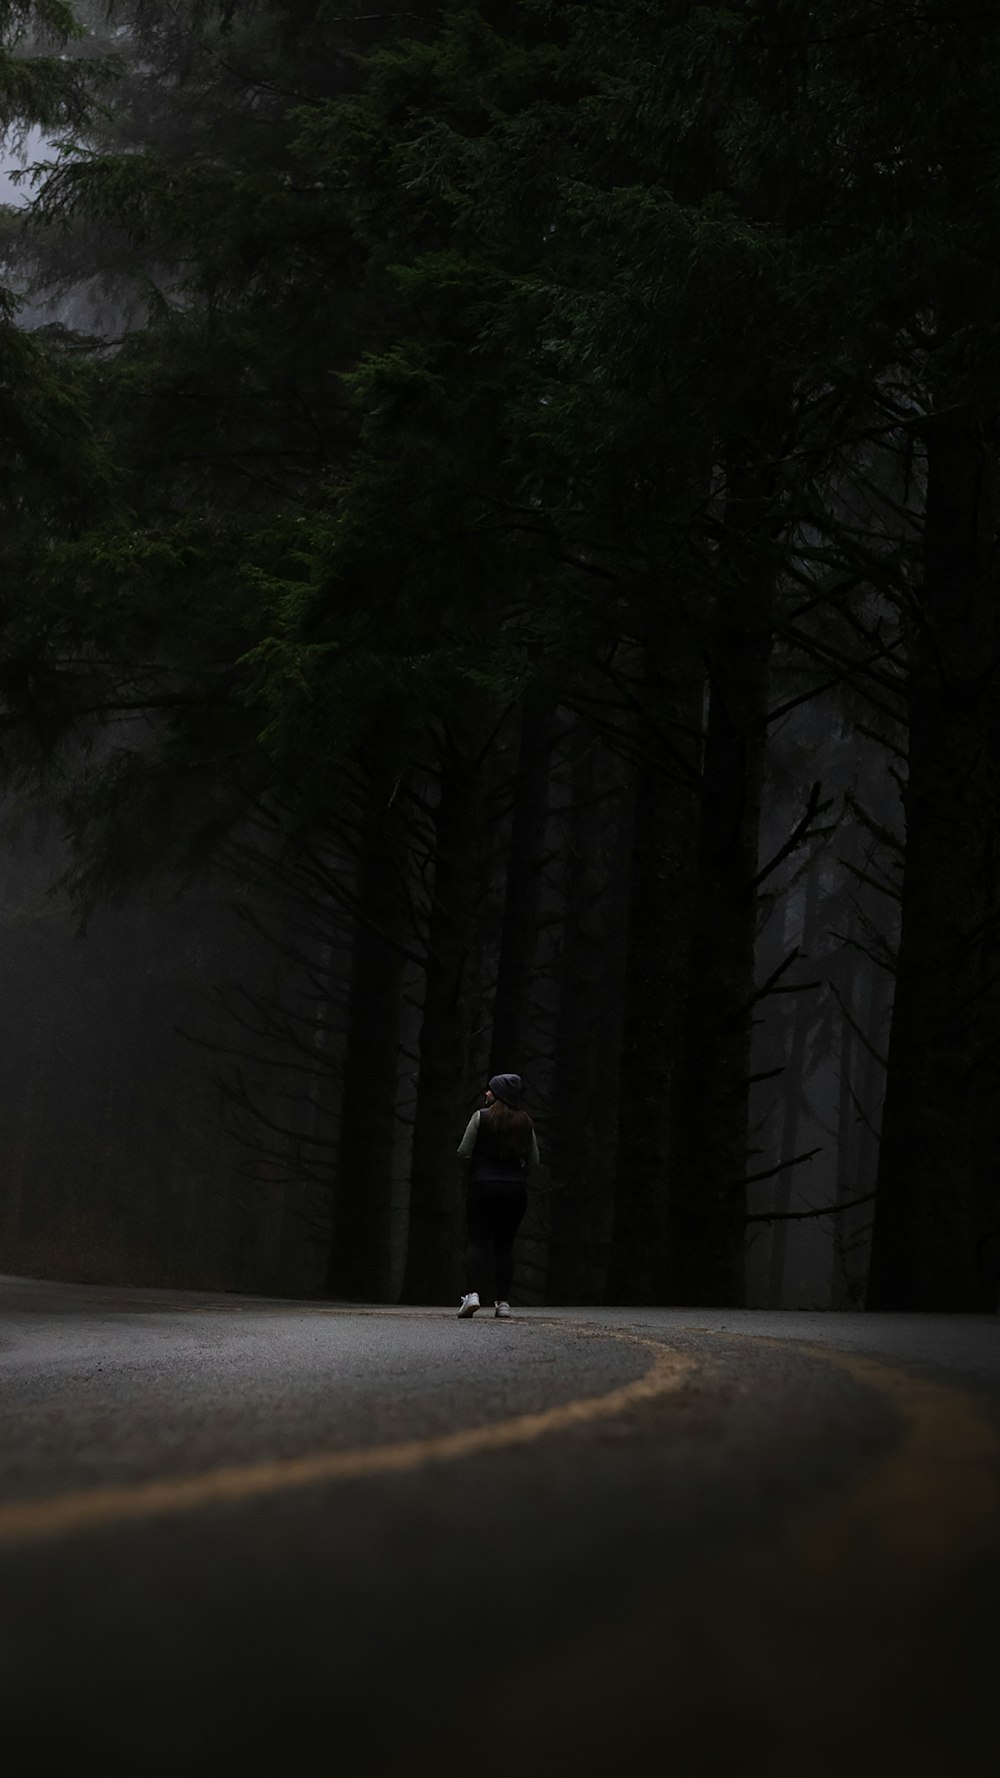 a person riding a skateboard down a dark road